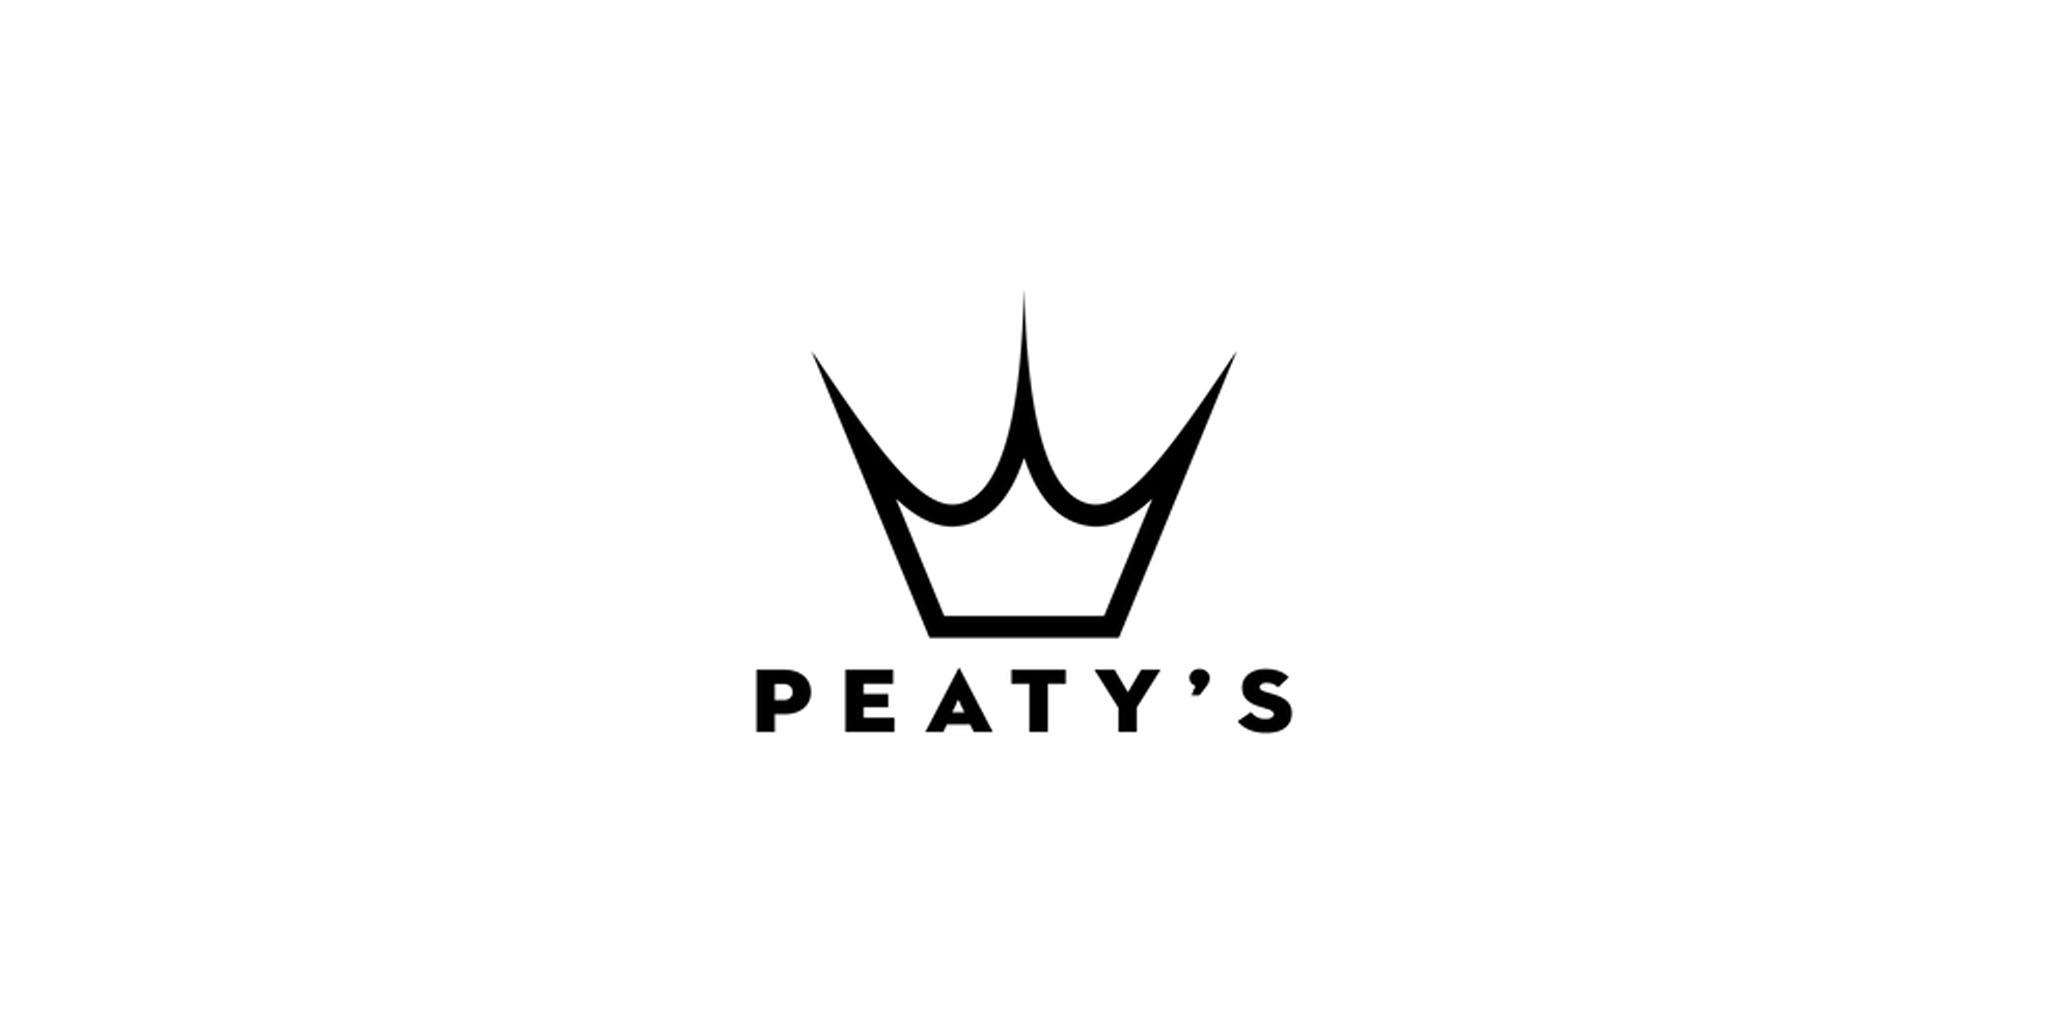 Peaty's logo kroon met tekst